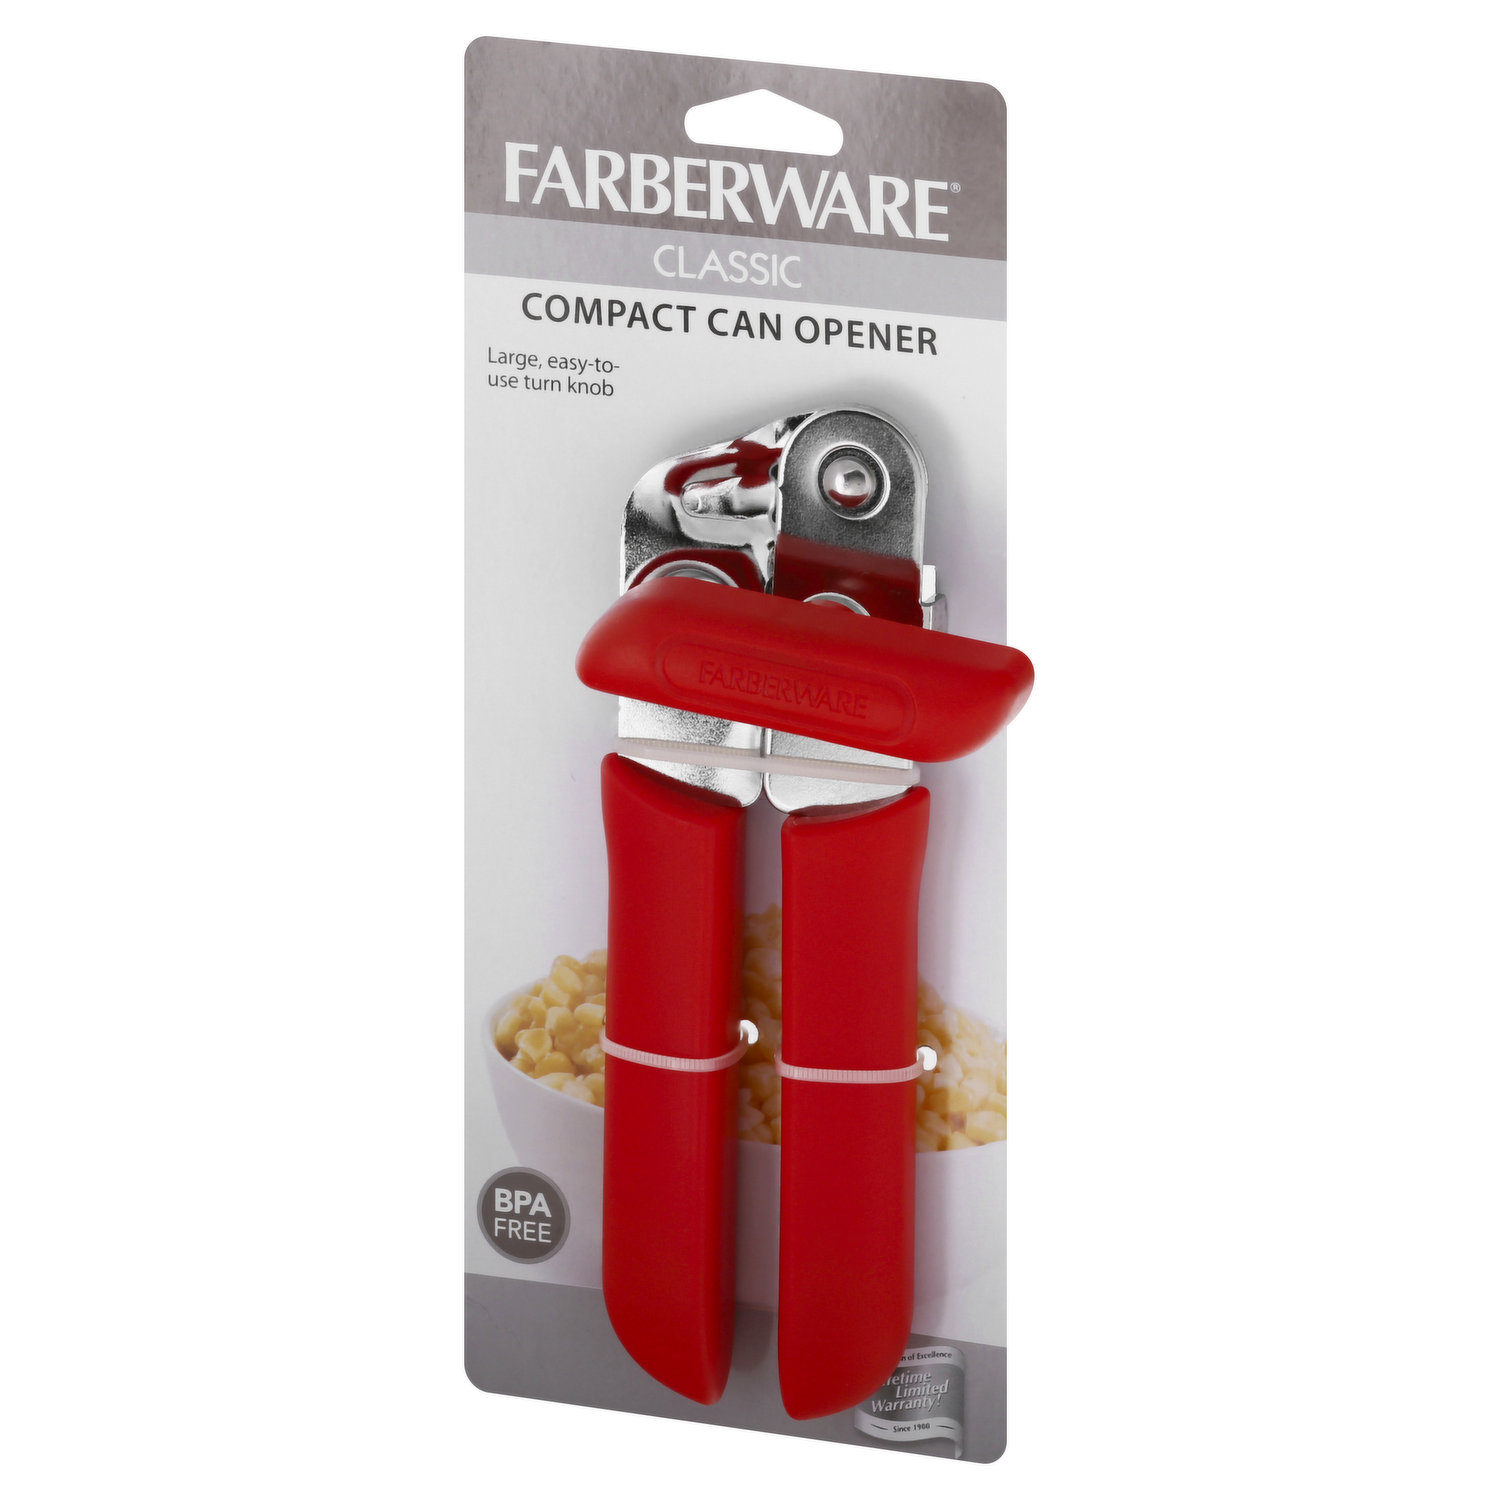 Farberware - Farberware, Classic Series - Can Opener, Easy Open, Shop